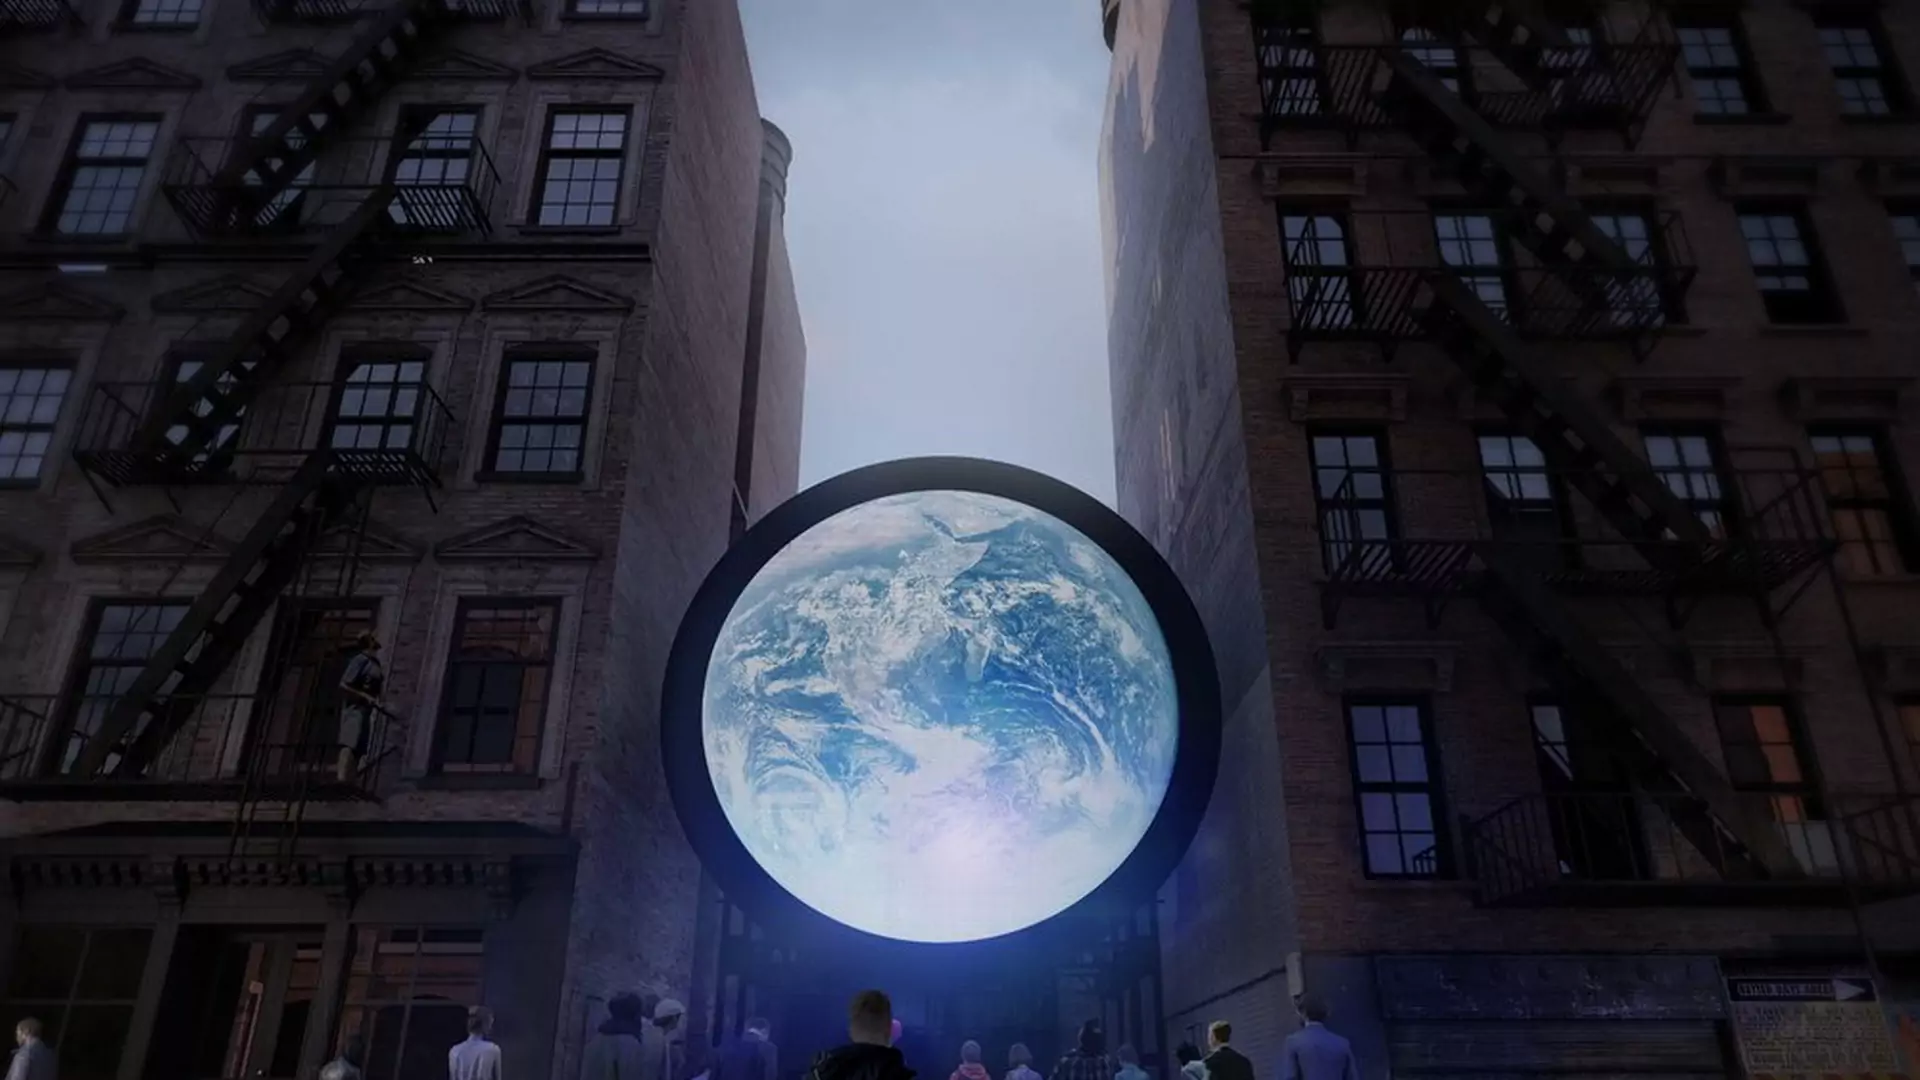 Ekran, który udaje Ziemię, stanie w sercu miasta. A na nim livestream z kosmosu